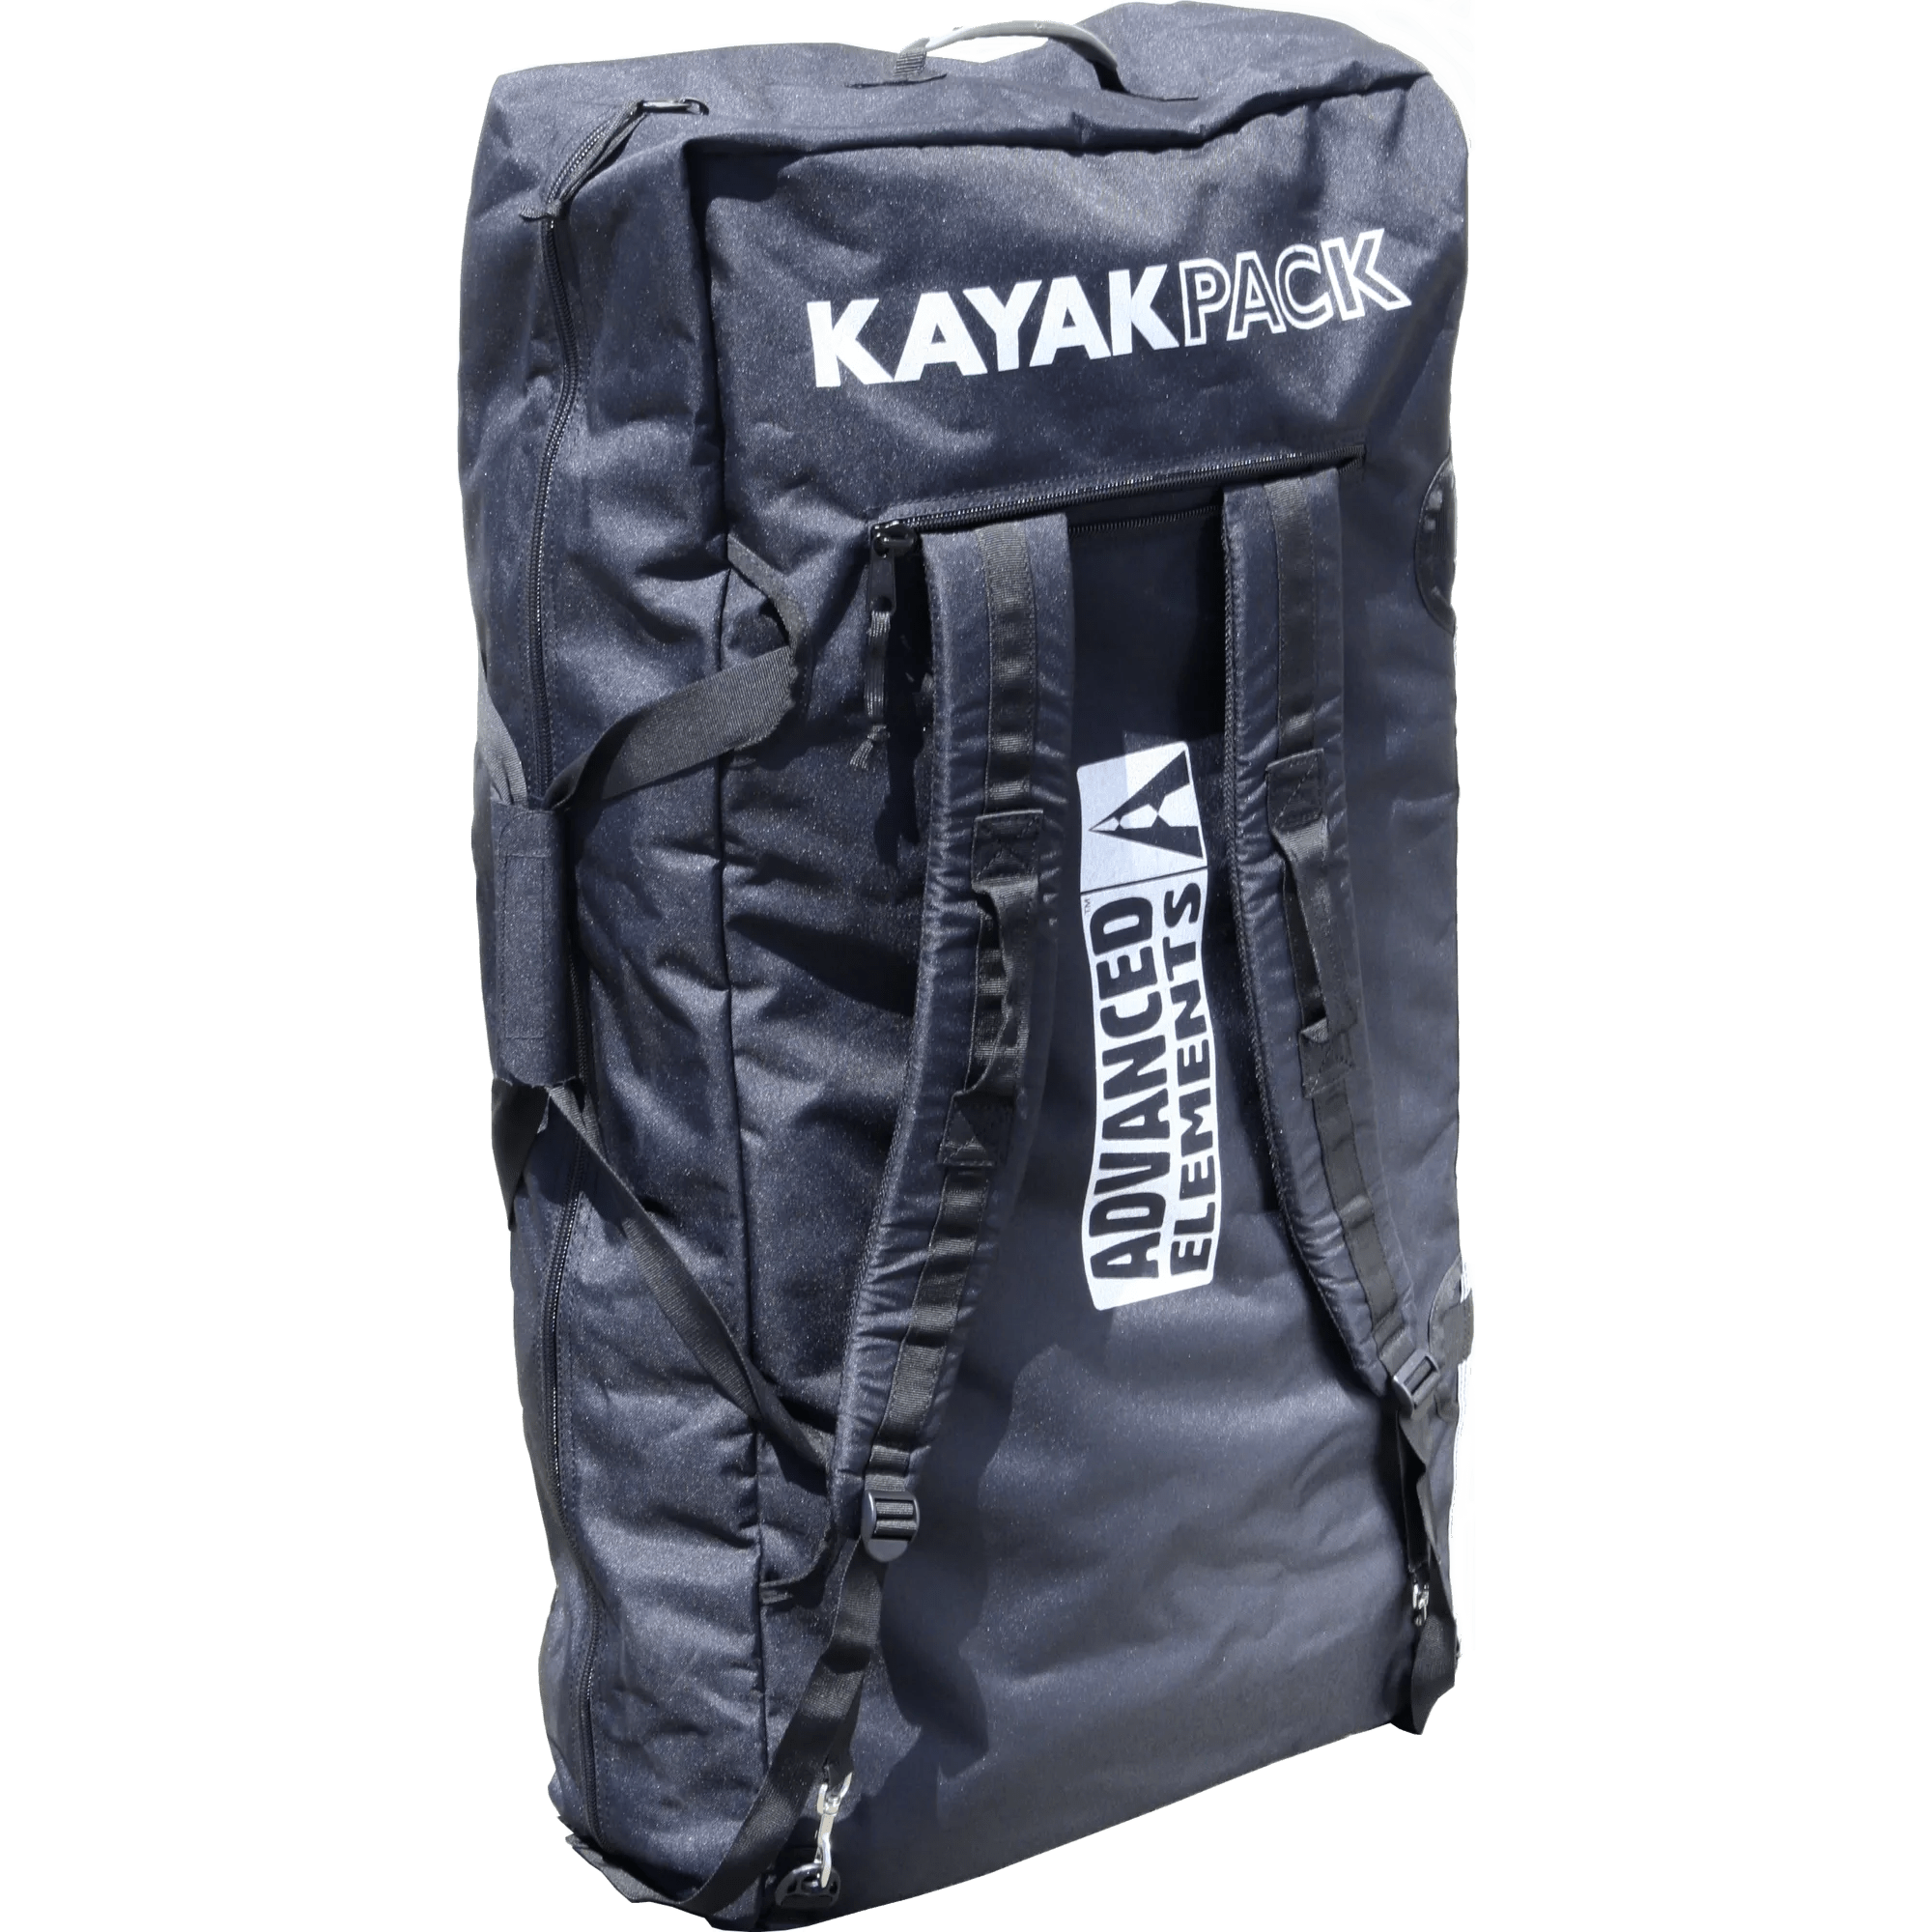 ADVANCED ELEMENTS - KayakPack™ - Black - AE3011 - TOP